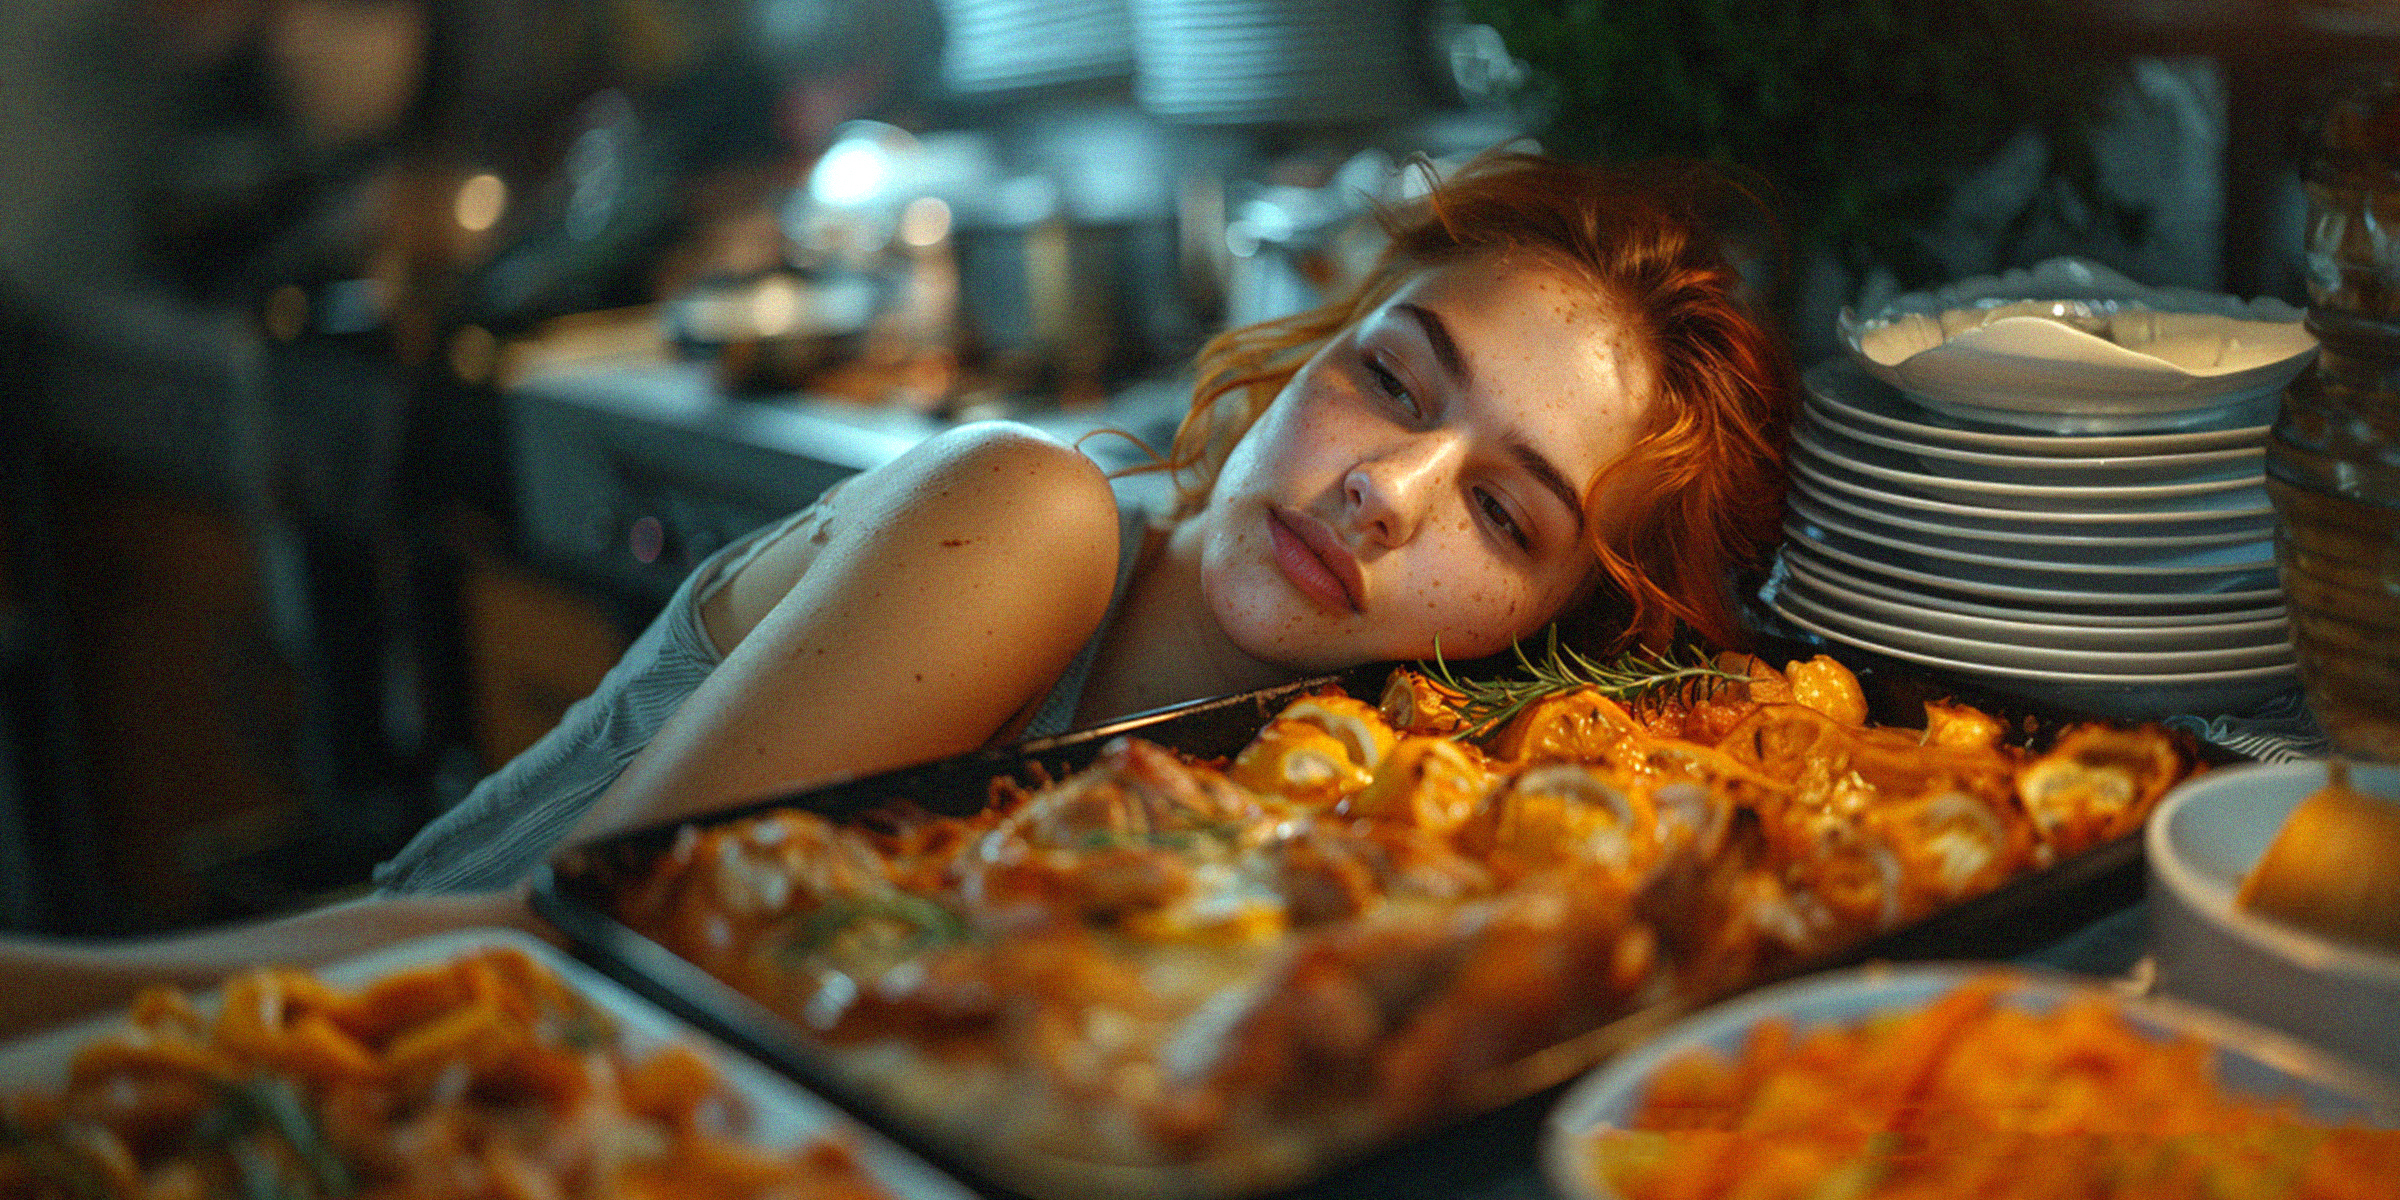 Una mujer joven apoyando la cabeza en una mesa con comida y platos | Fuente: Midjourney